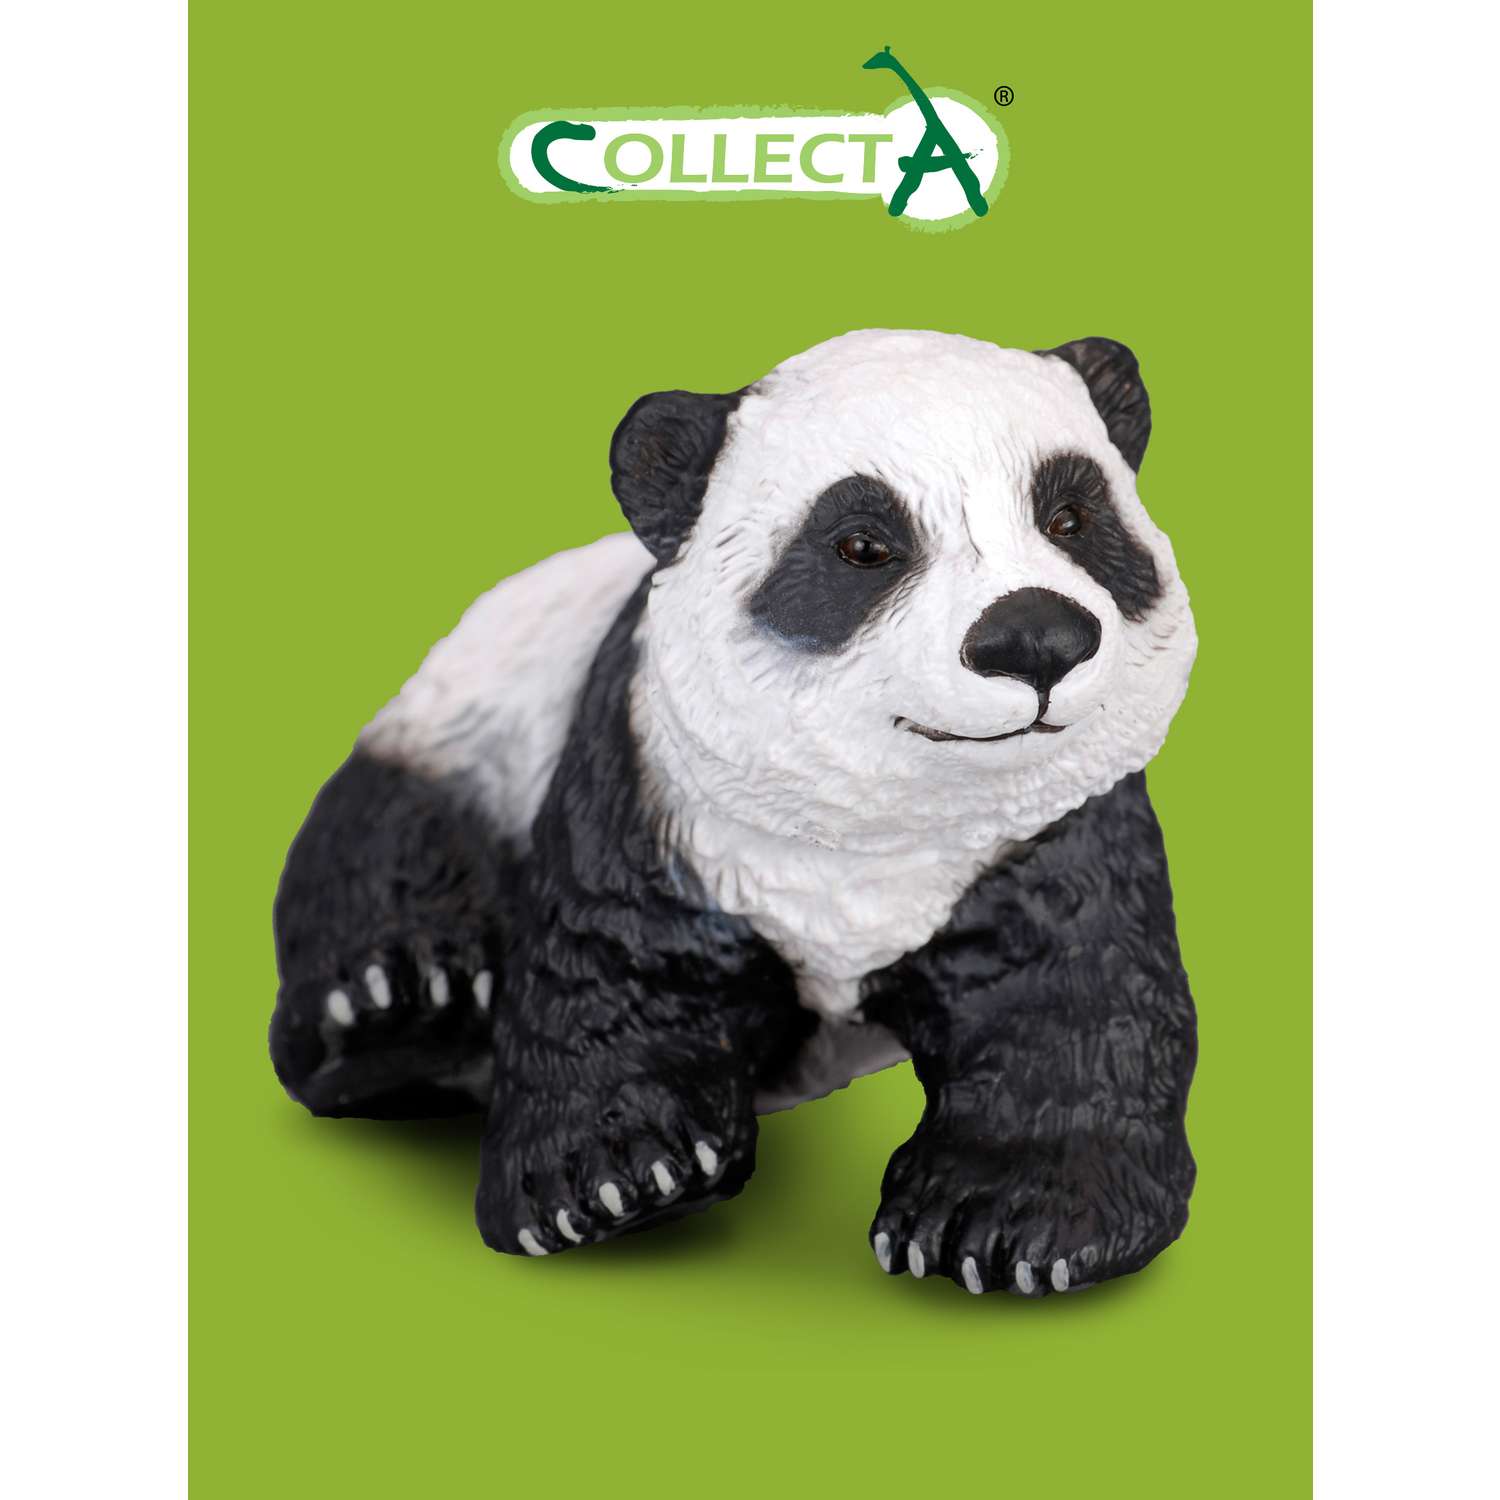 Фигурка животного Collecta Детёныш панды сидящий - фото 1